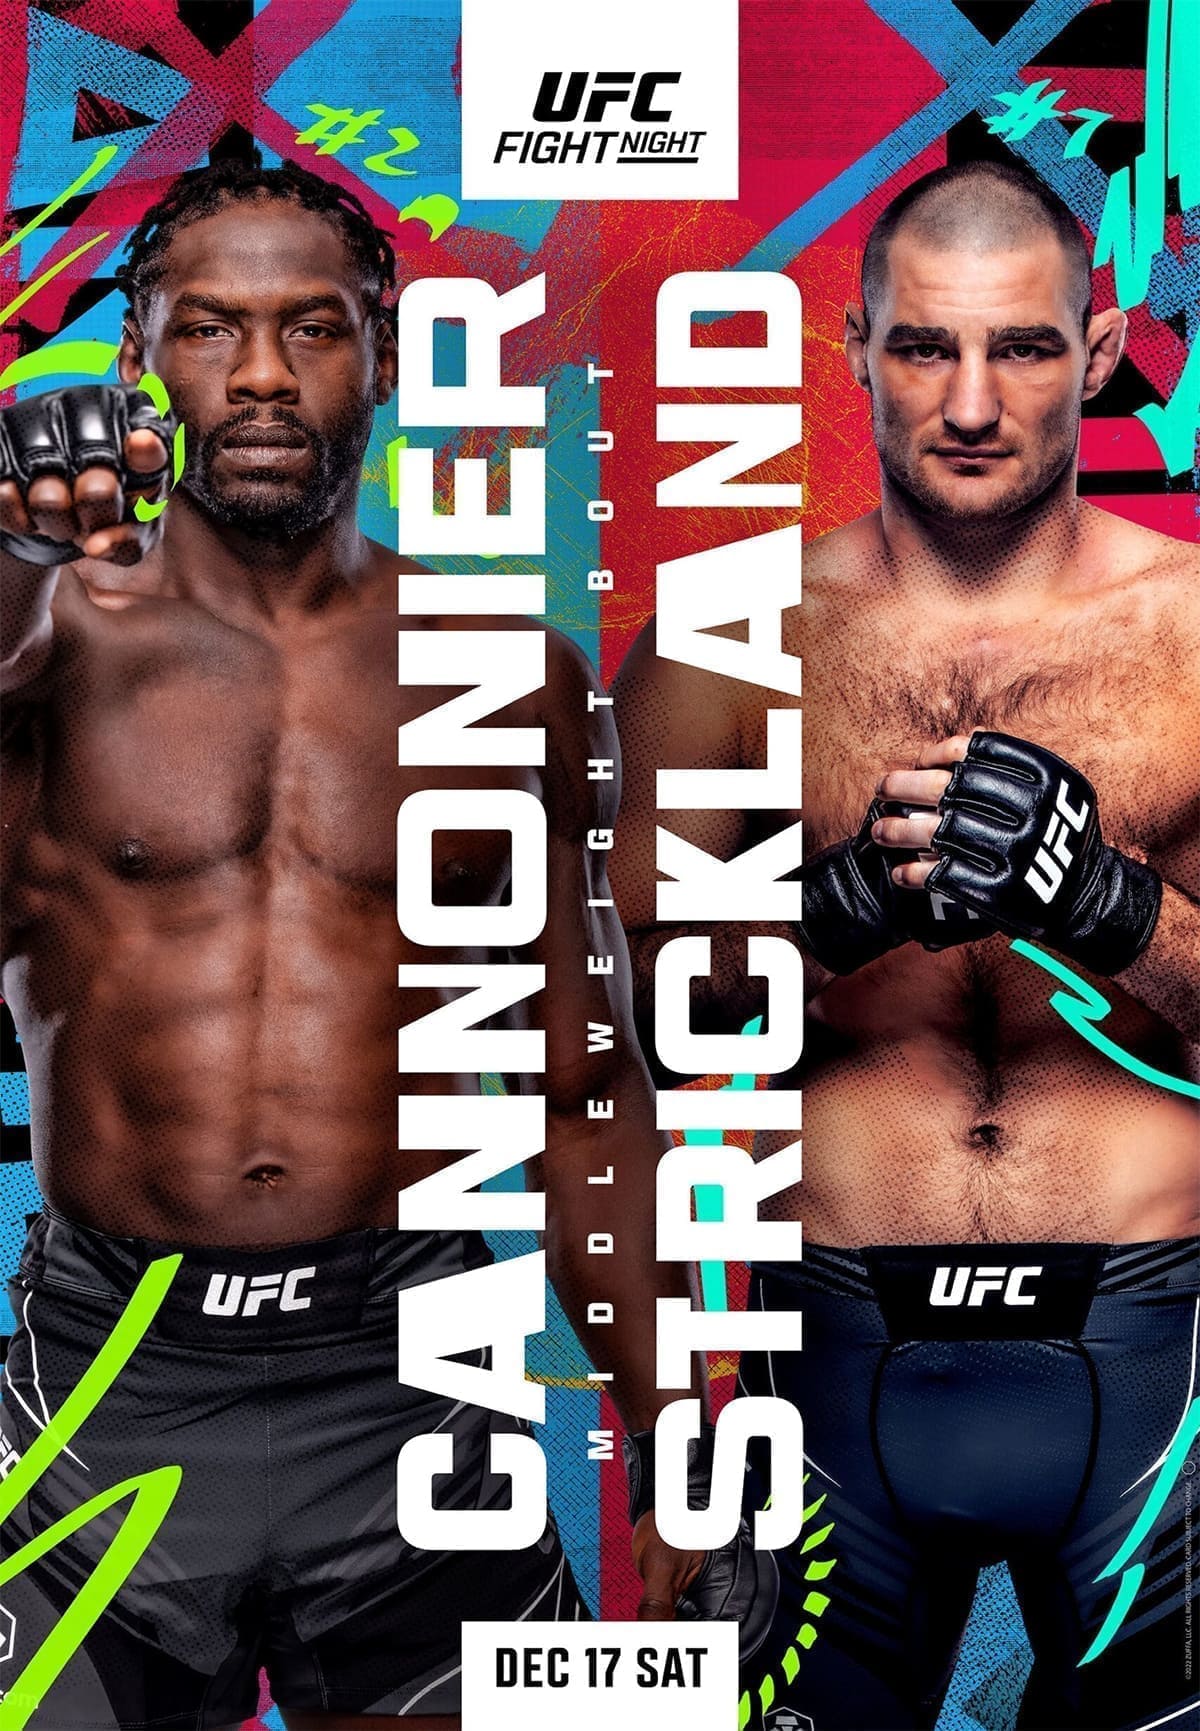 UFC Fight Night 216: Каннонир - Стрикленд дата проведения, кард, участники и результаты